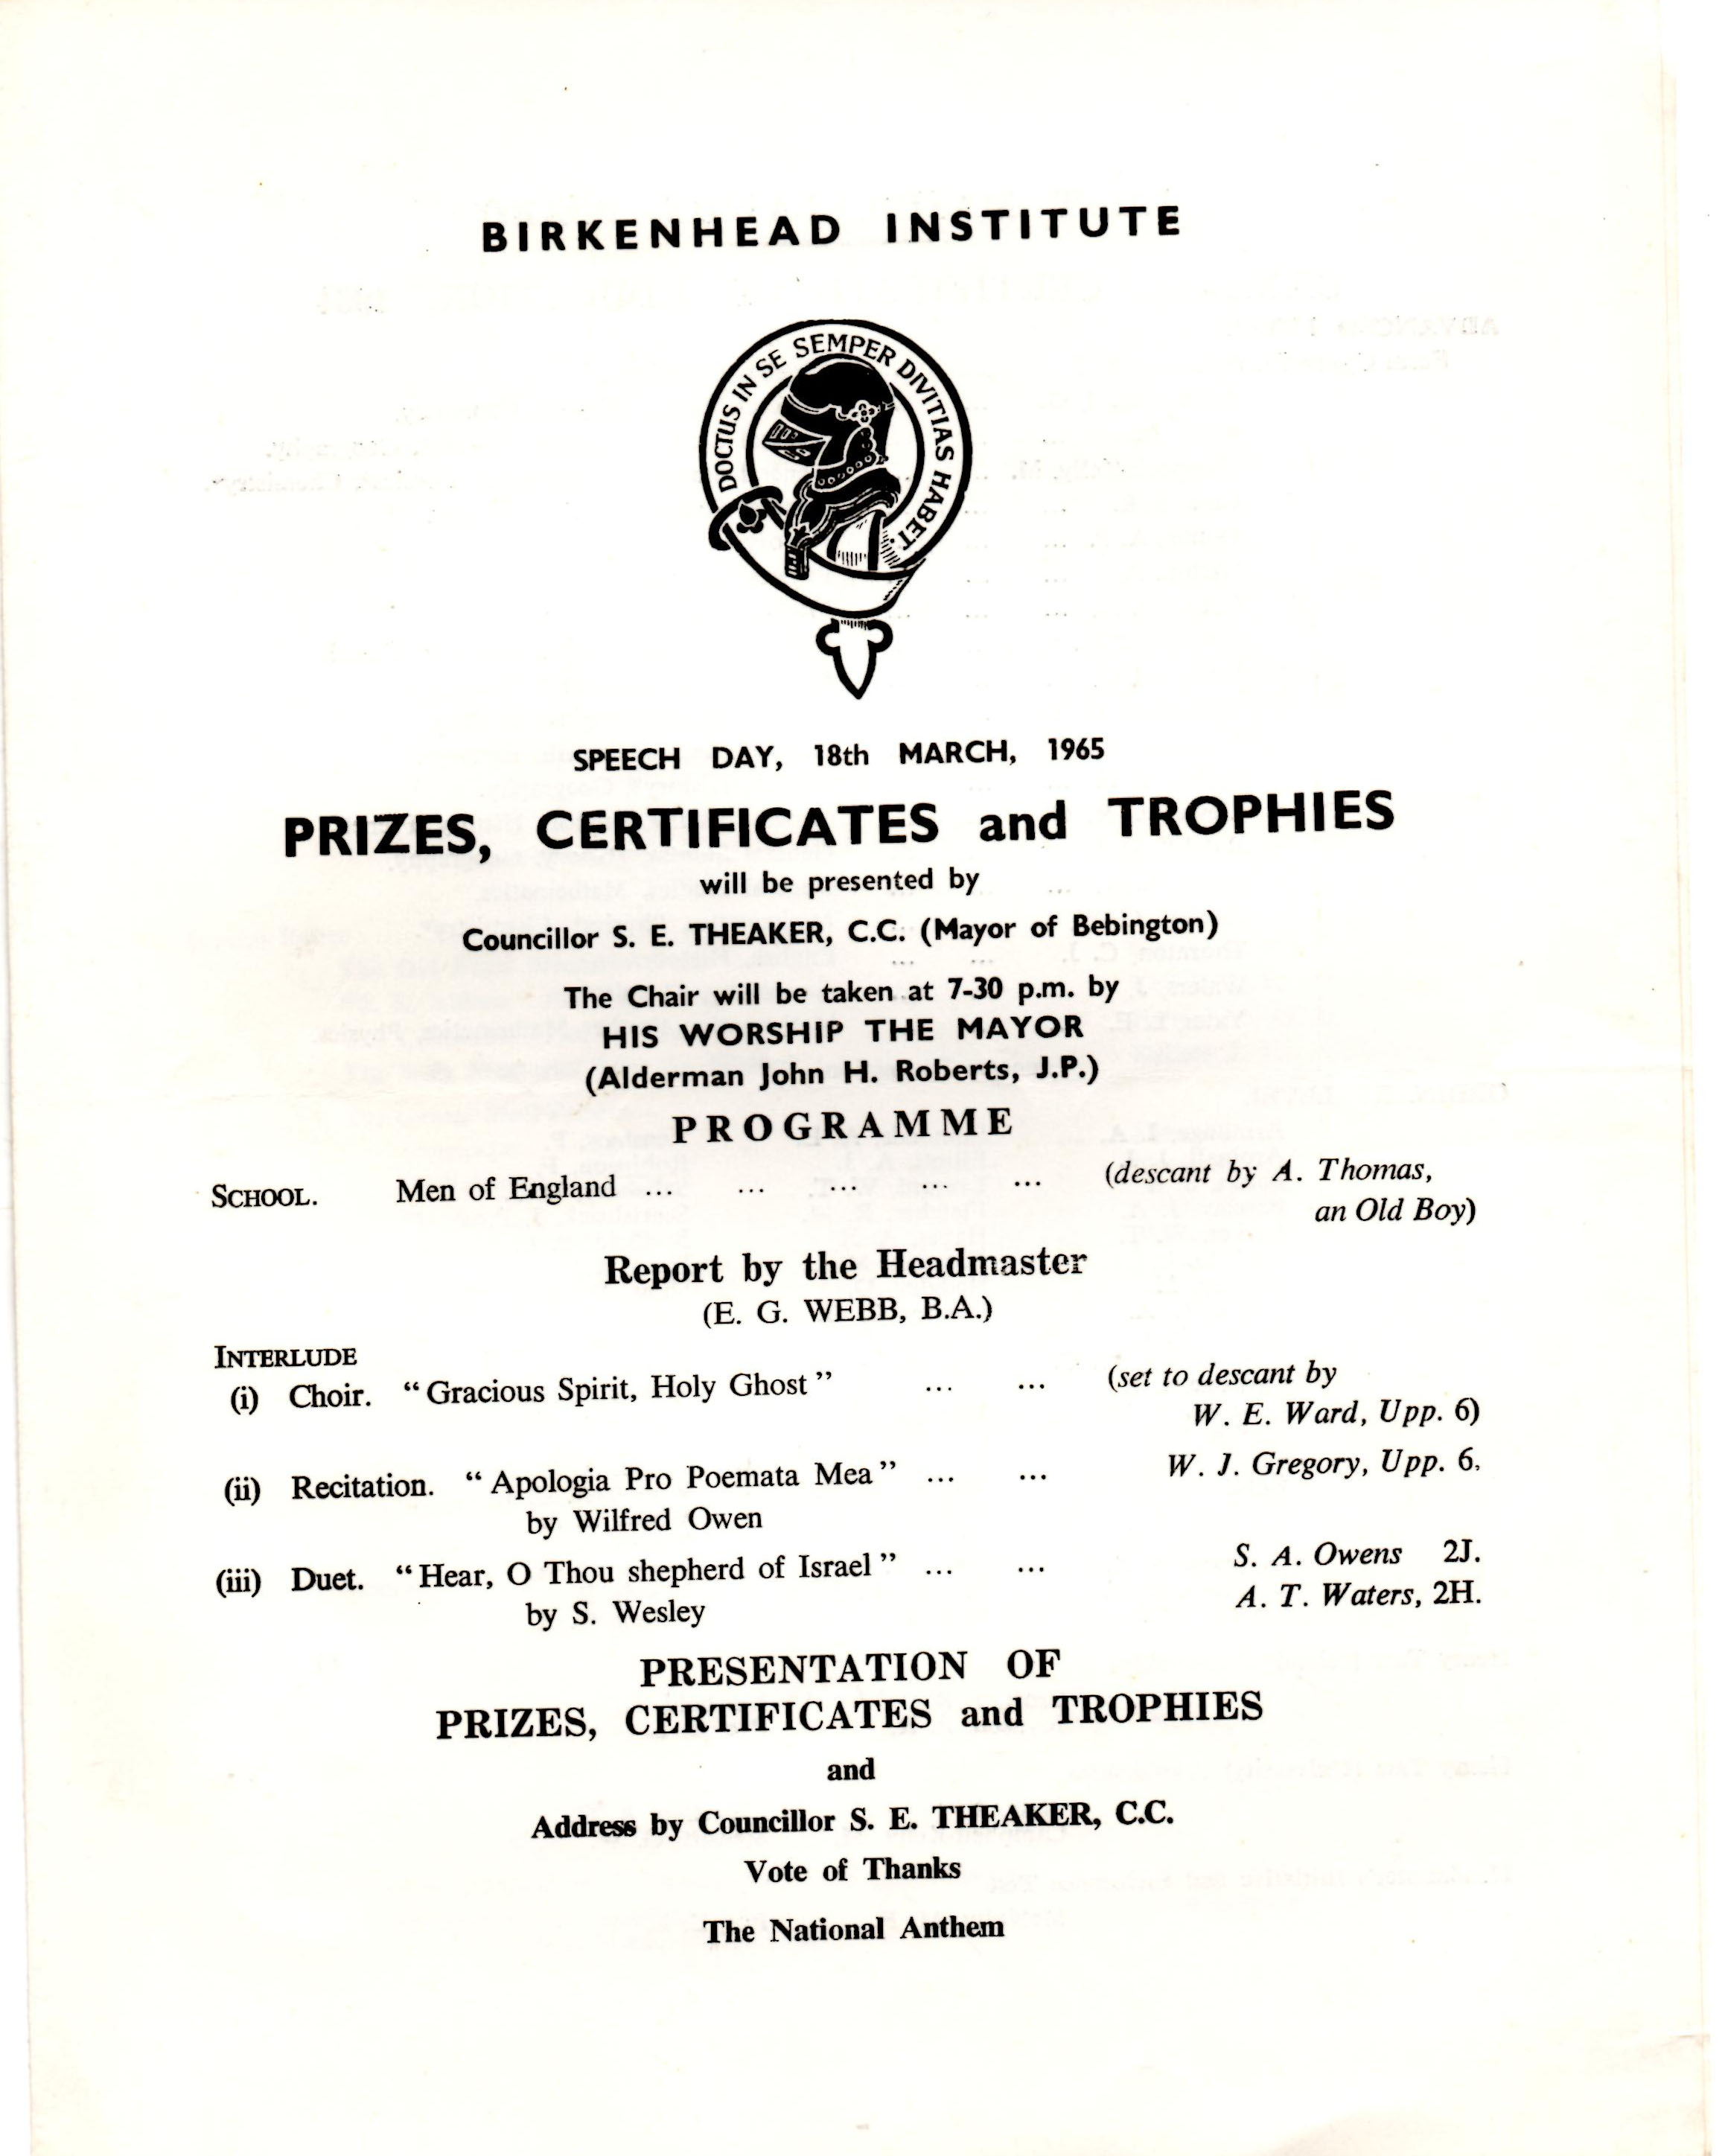 Program for Speech Day 1965